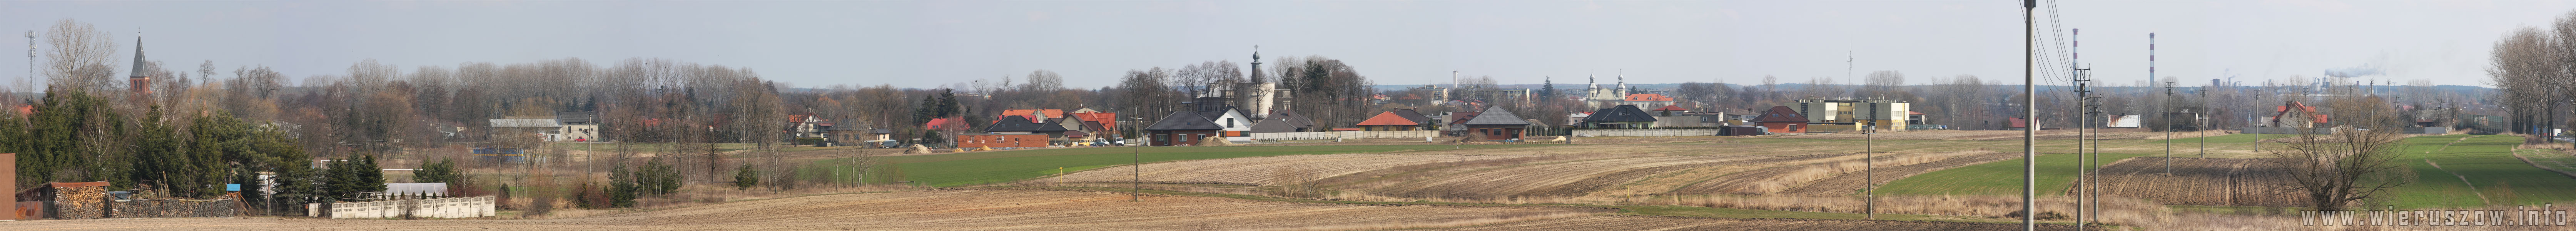 Panorama Wierusz�w Podzamcze